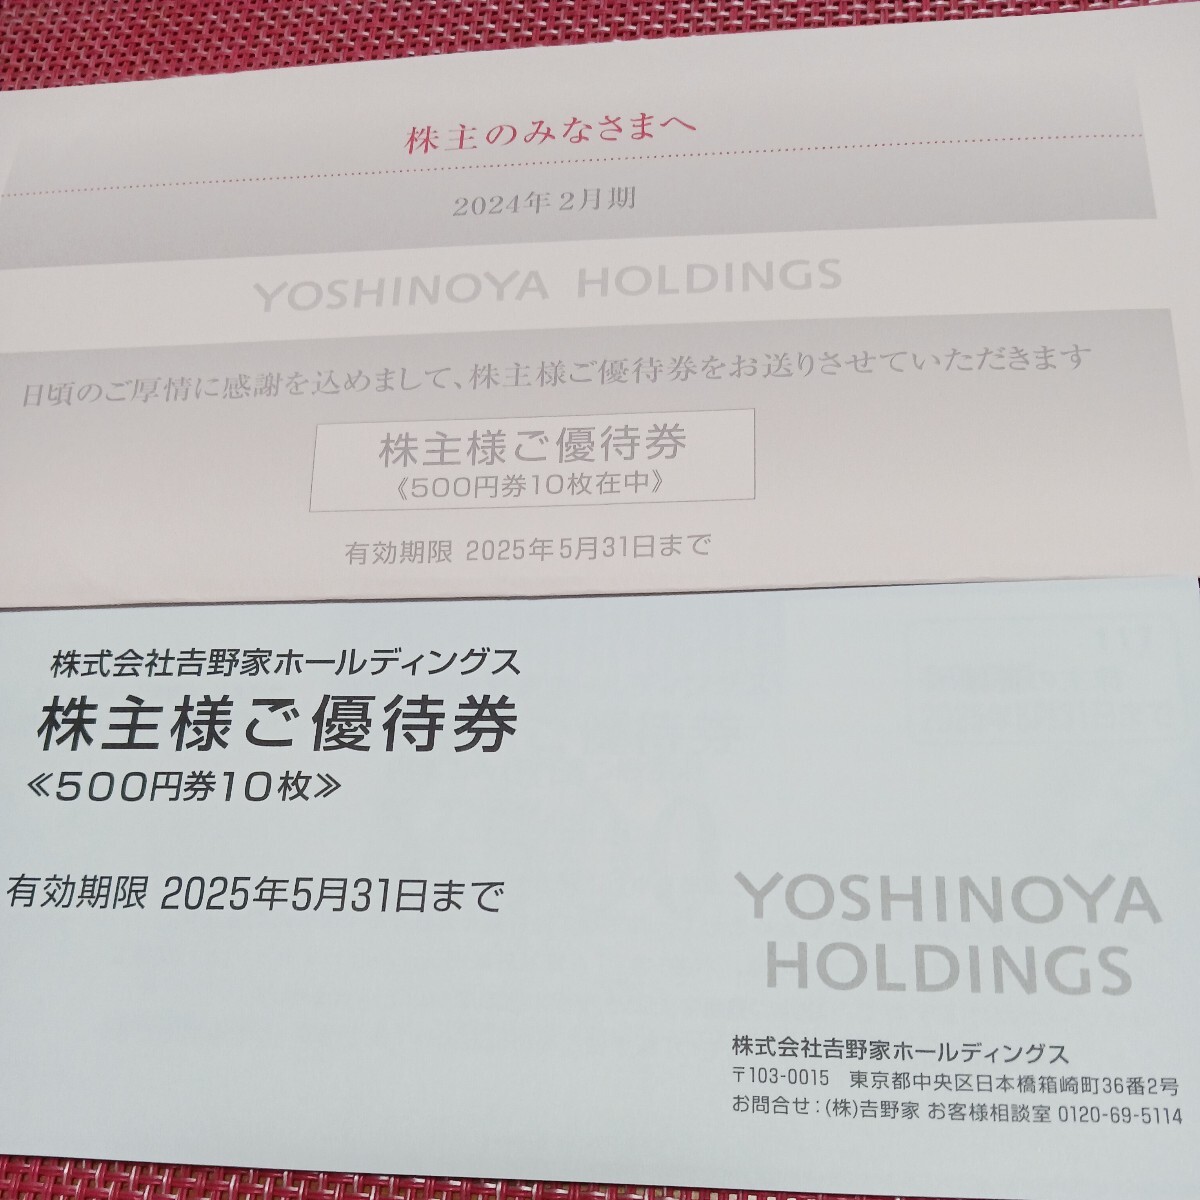  новейший *. Yoshino дом акционер пригласительный билет 5000 иен минут иметь временные ограничения действия 2025 год 5 месяц 31 до бесплатная доставка 